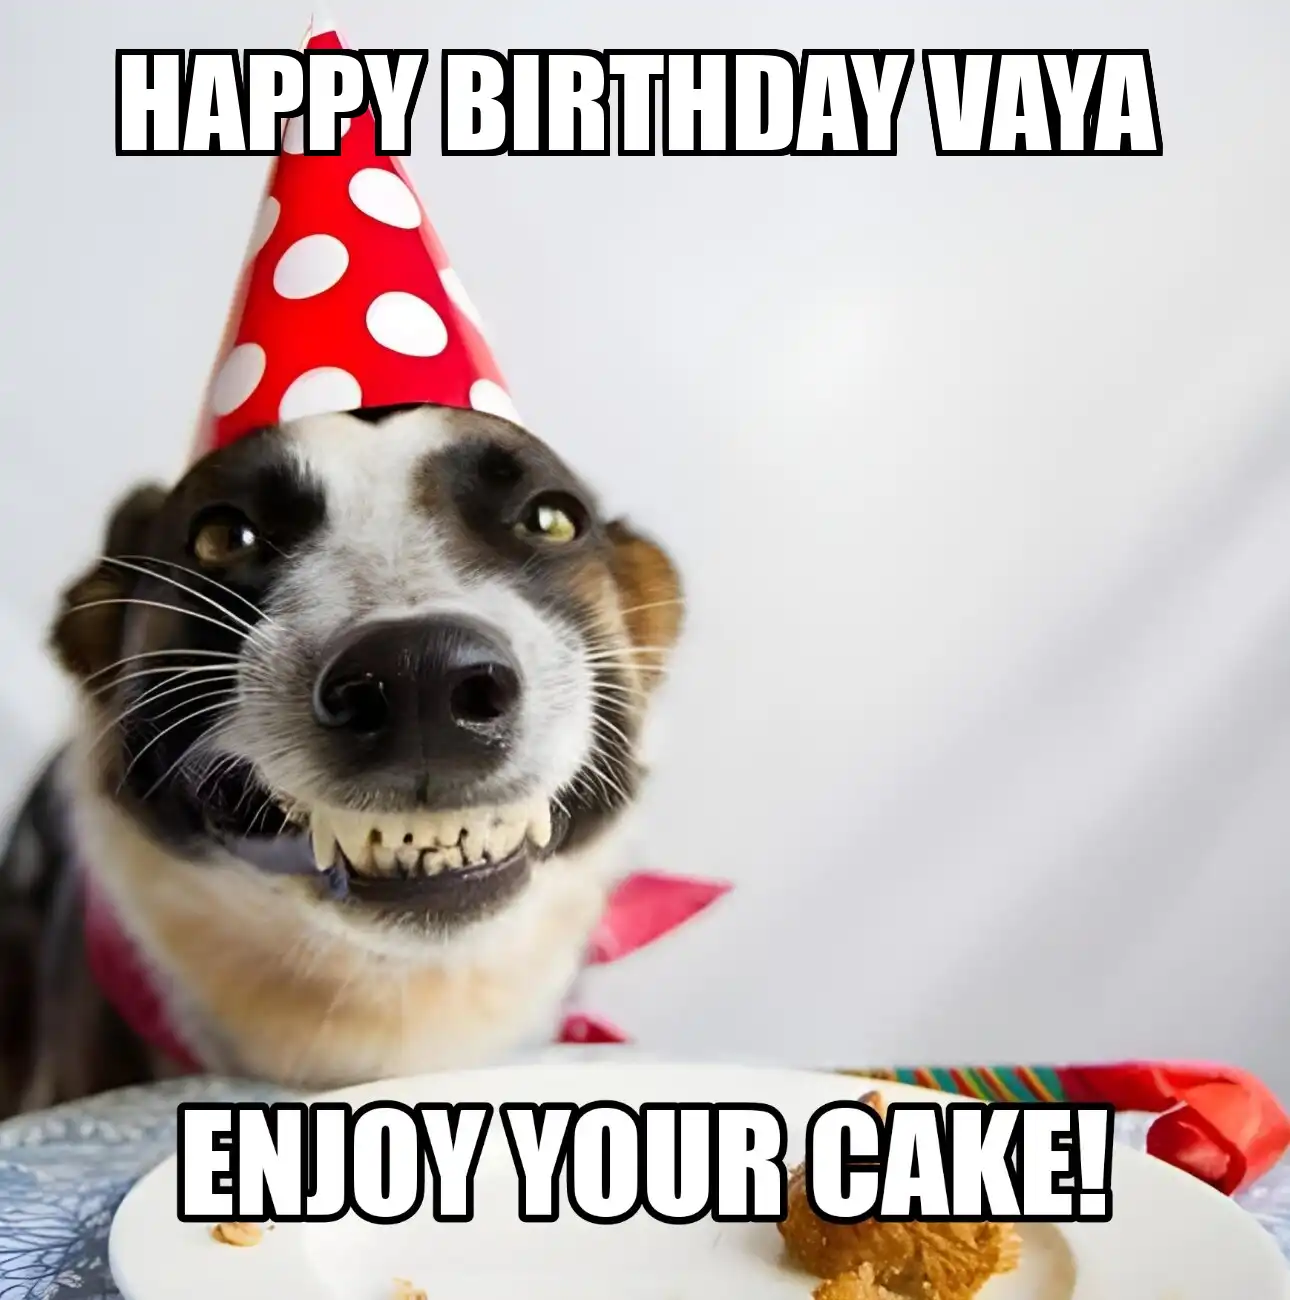 Happy Birthday Vaya Enjoy Your Cake Dog Meme